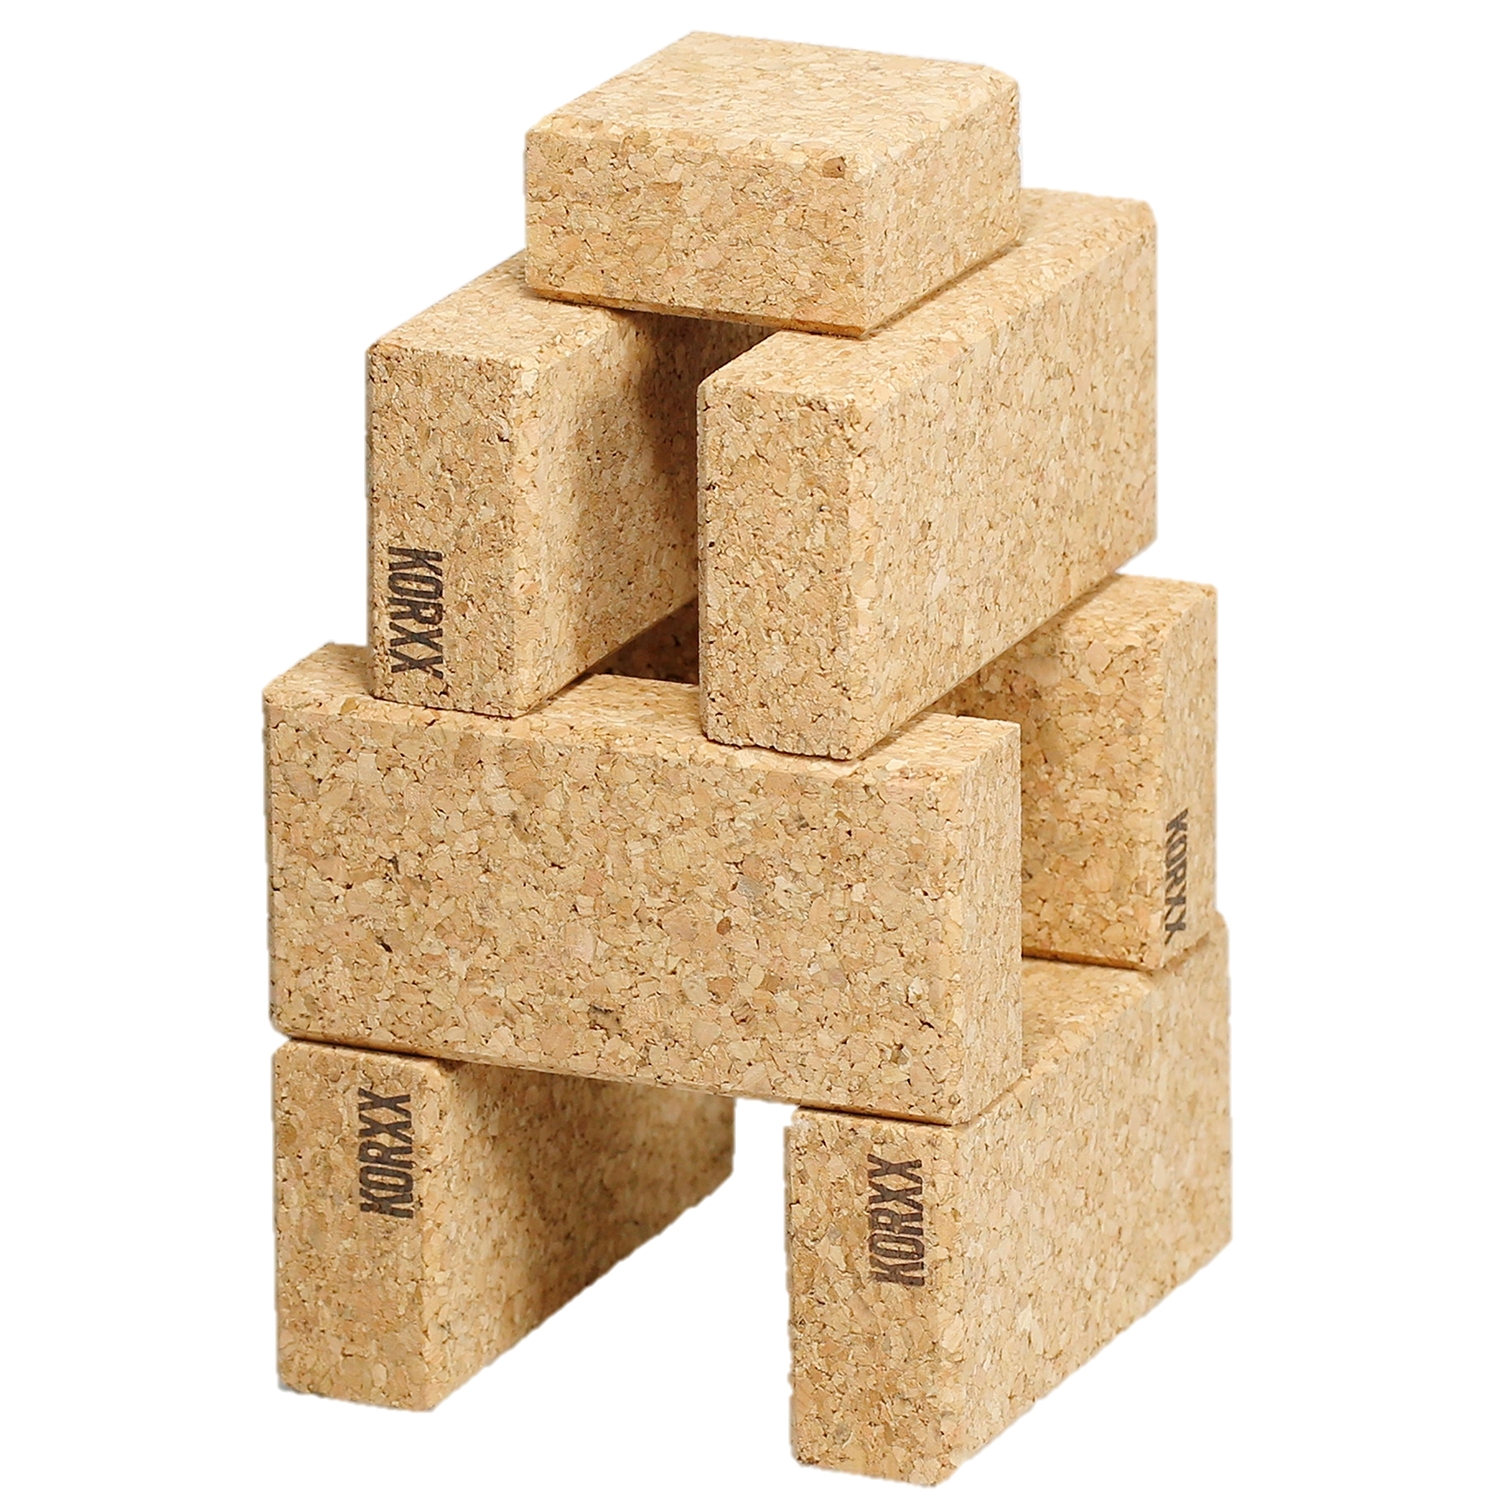 Cork Building Blocks for Kids - 20 Piece Set - CorkHouse